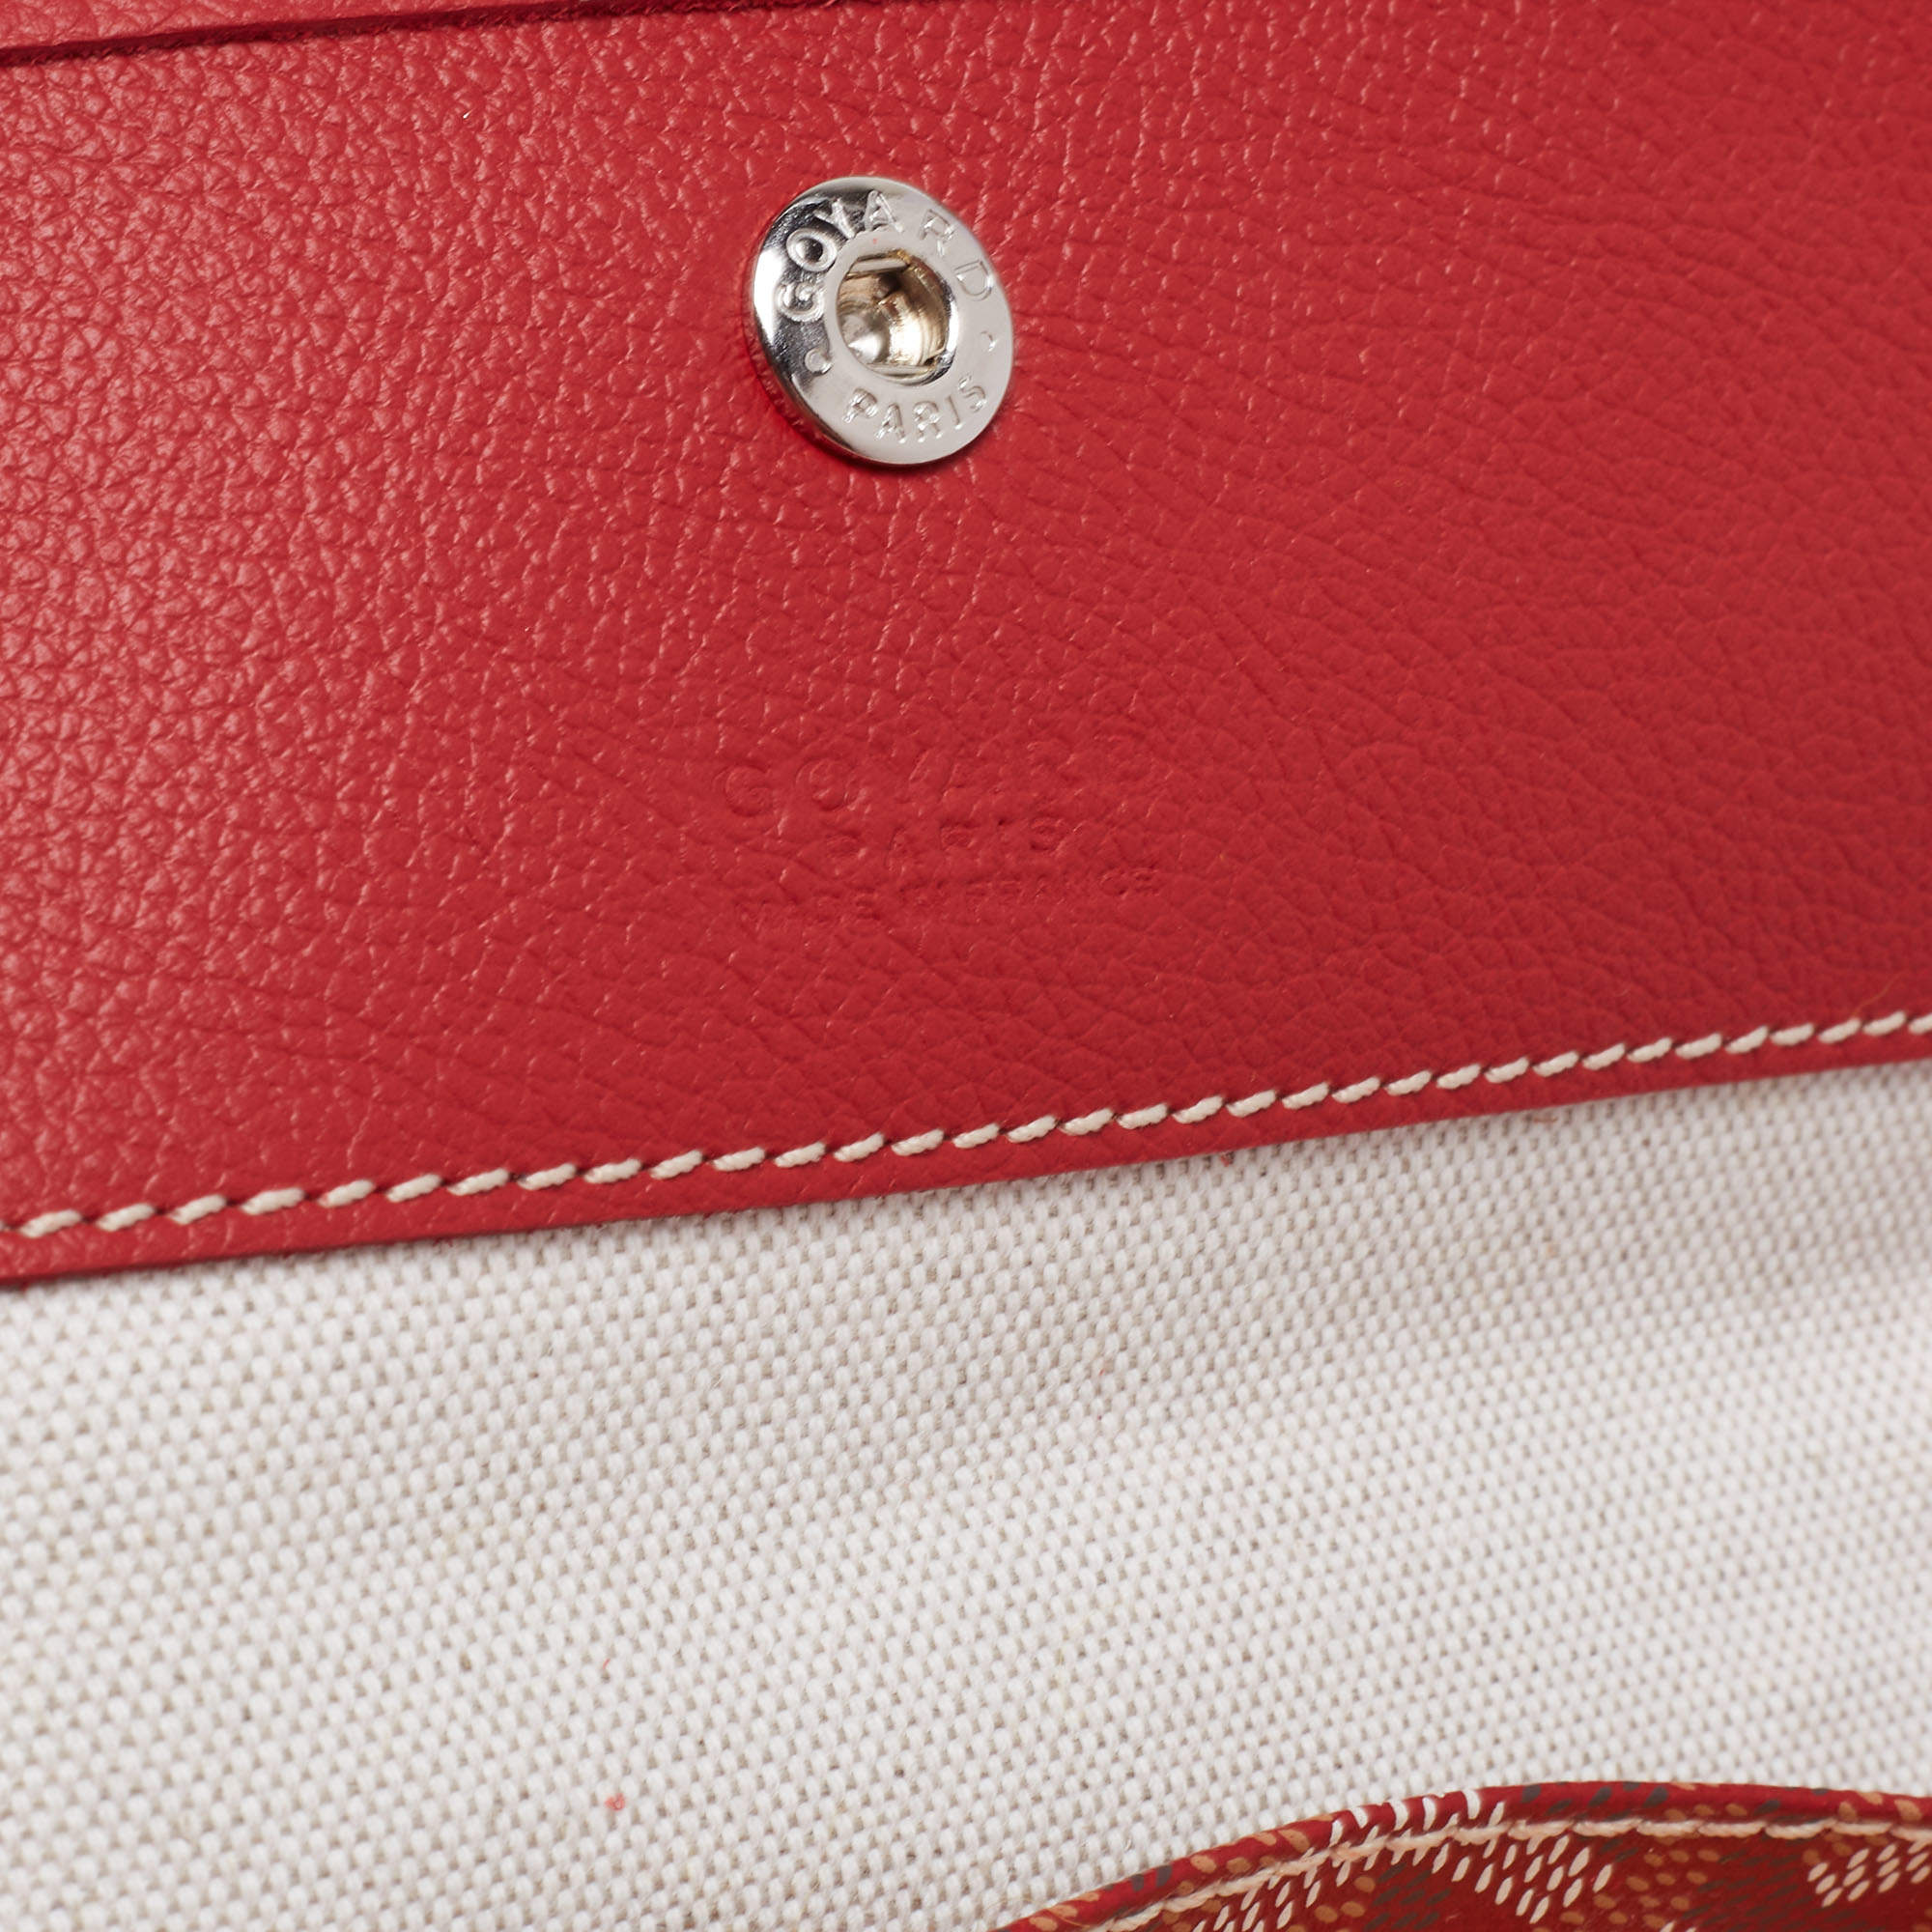 Cloth purse Goyard Red in Cloth - 25502831